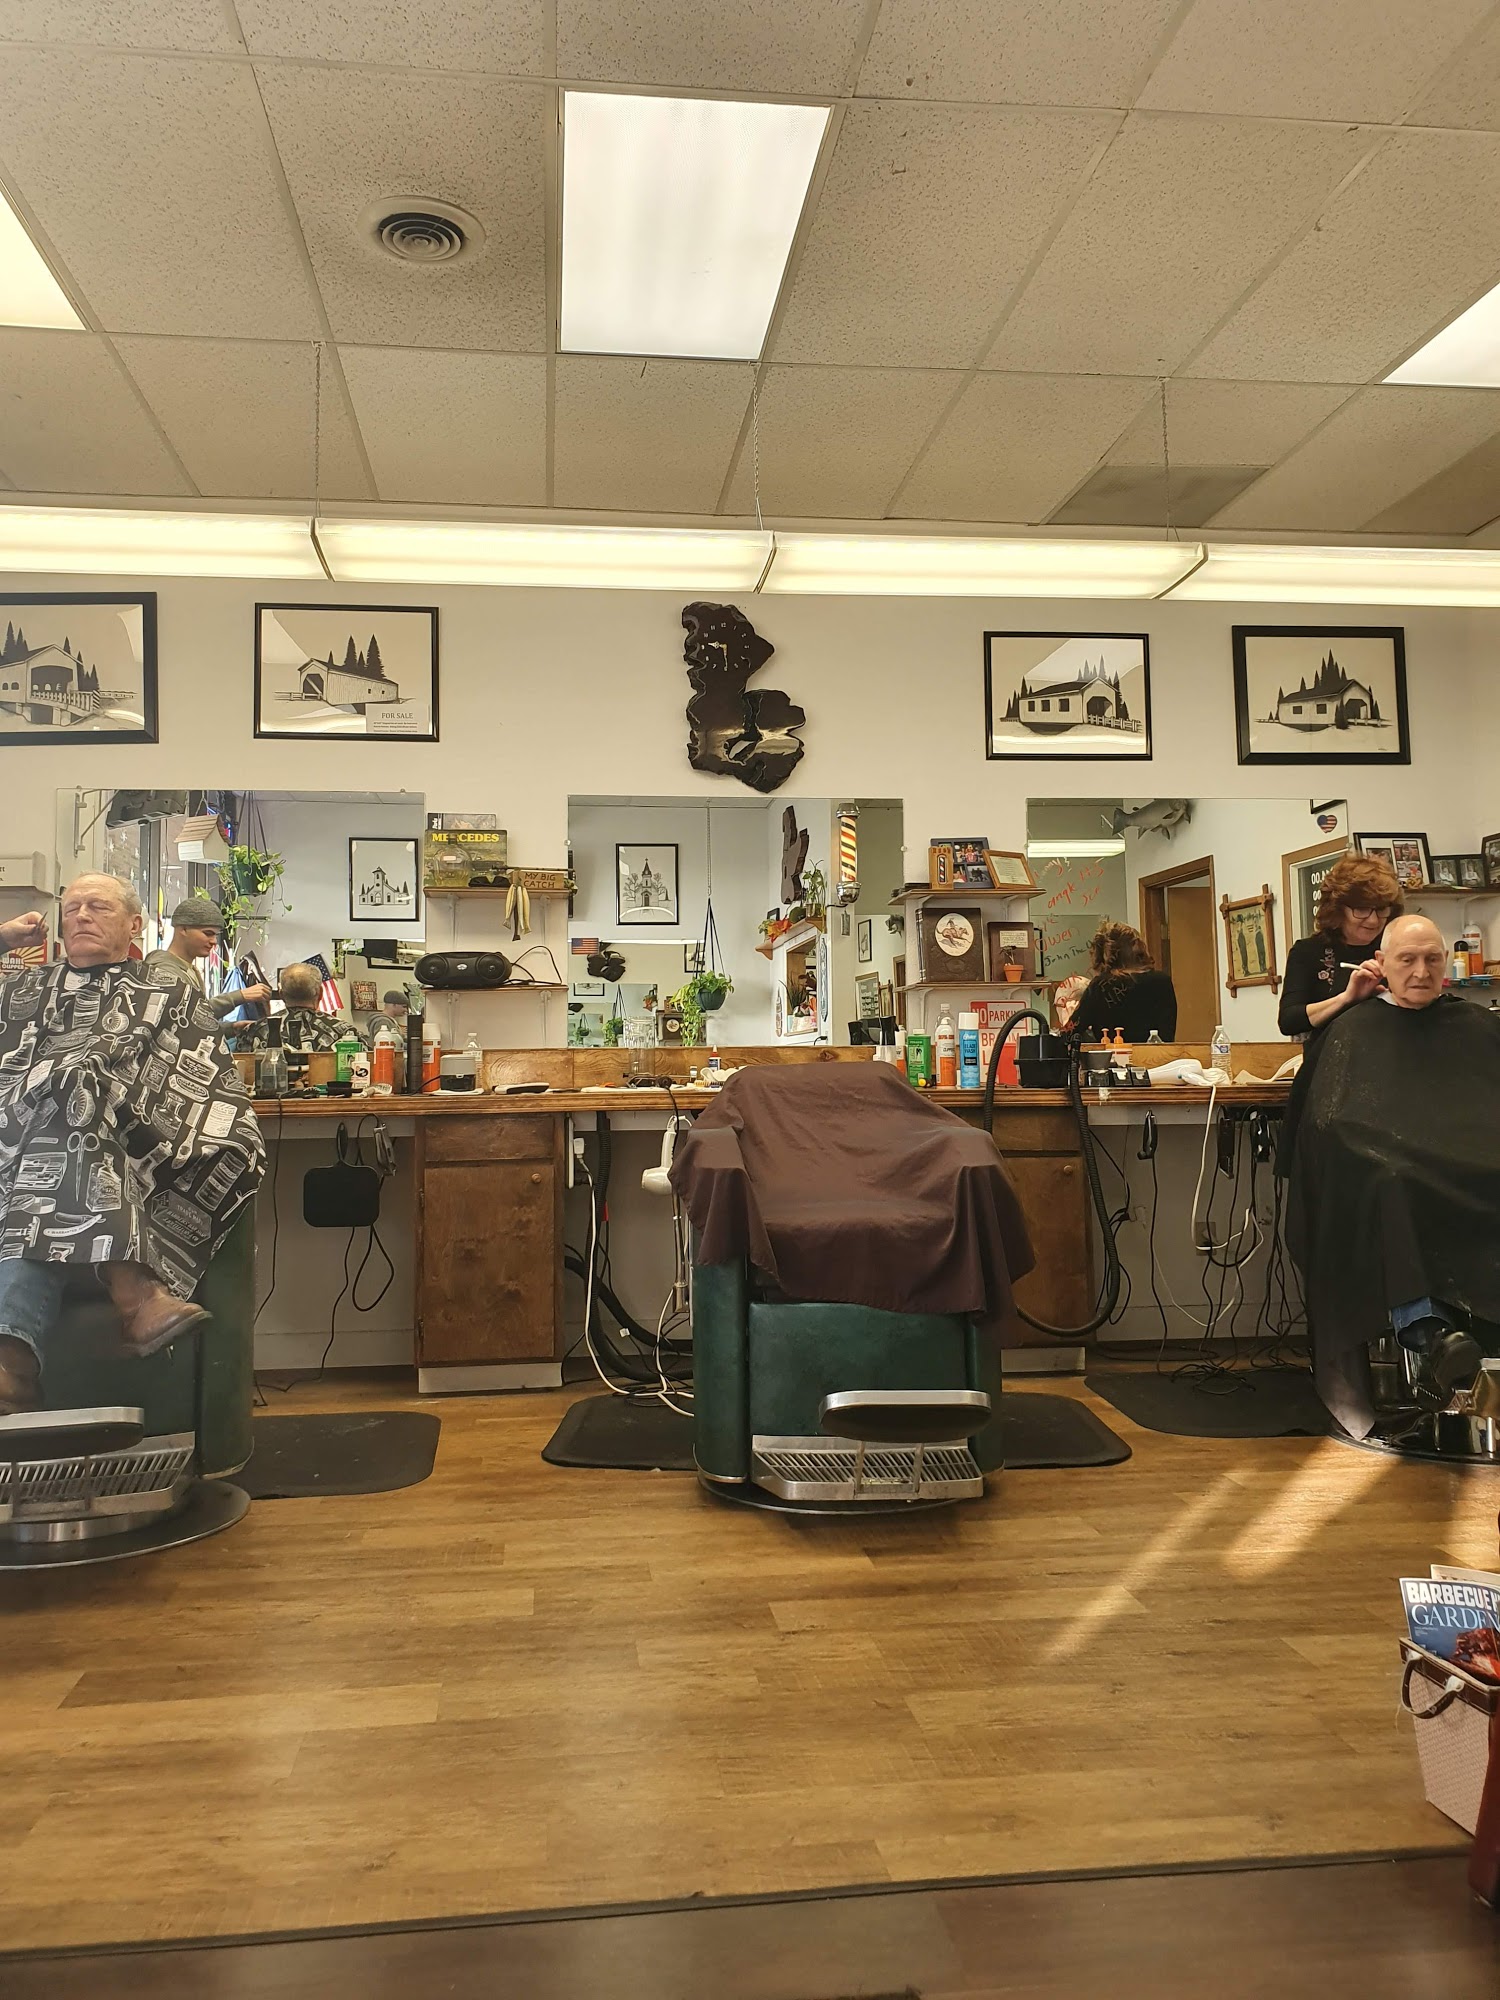 Red's Barber Shop